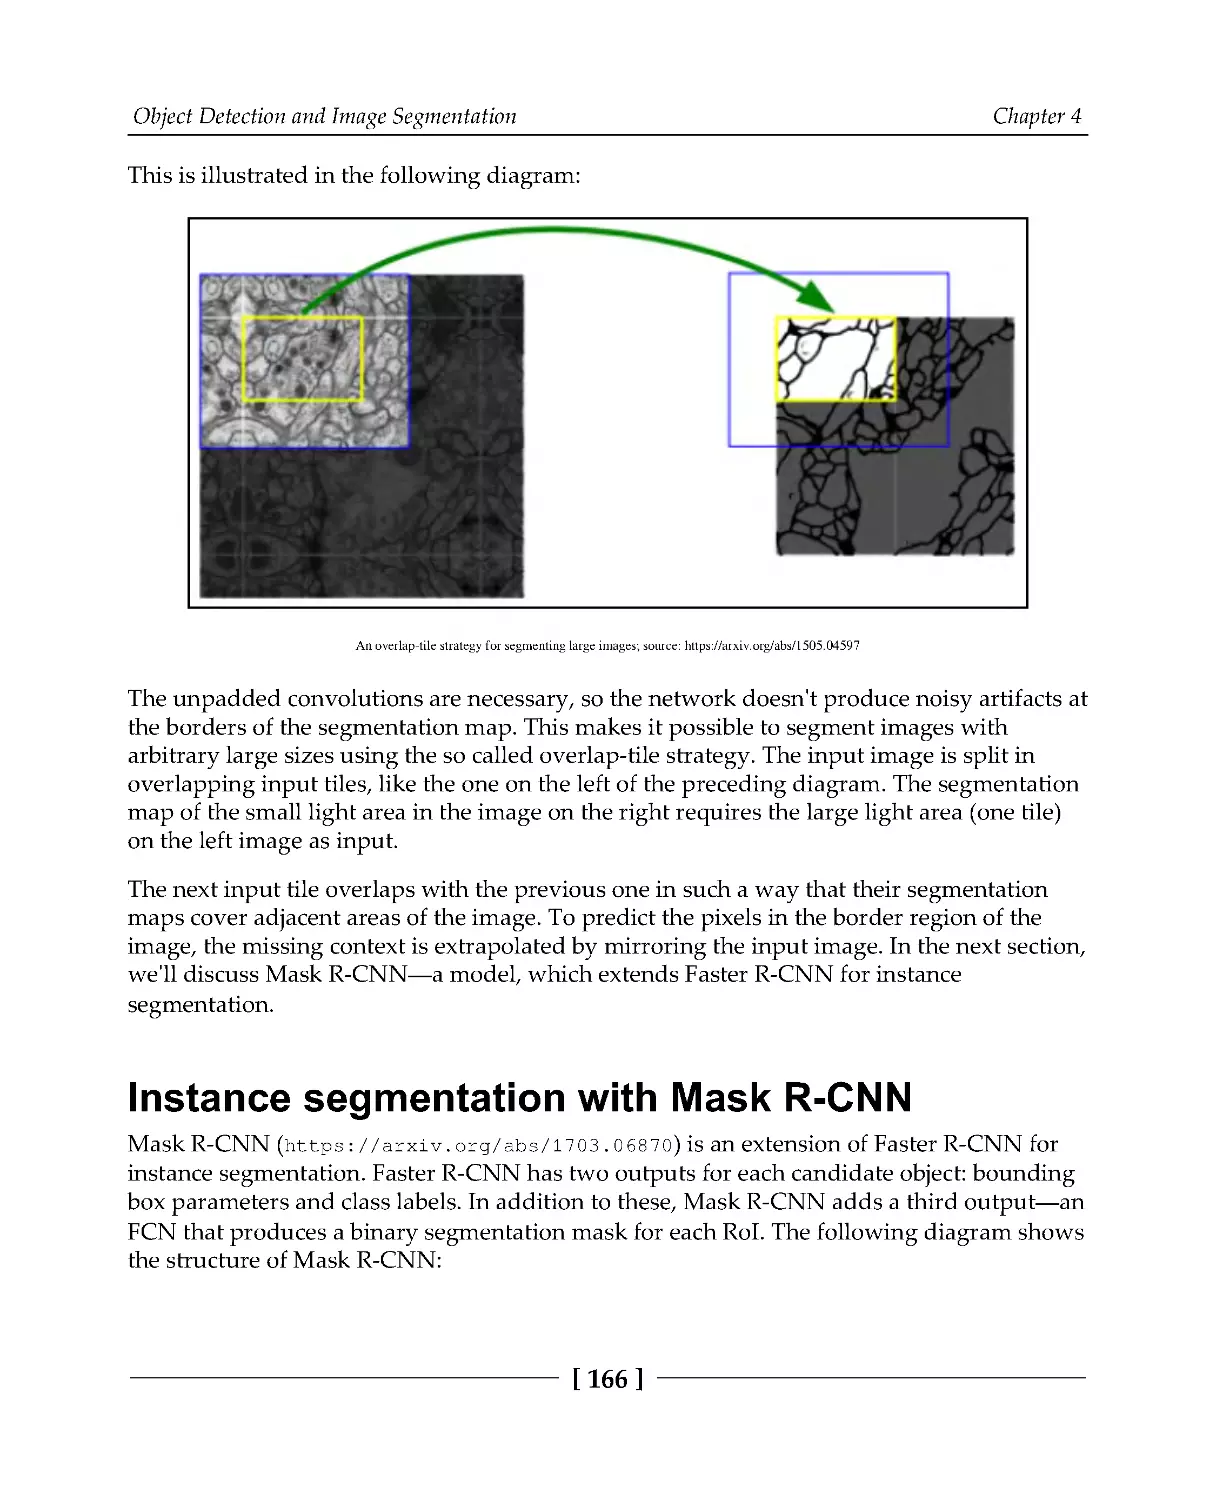 Instance segmentation with Mask R-CNN